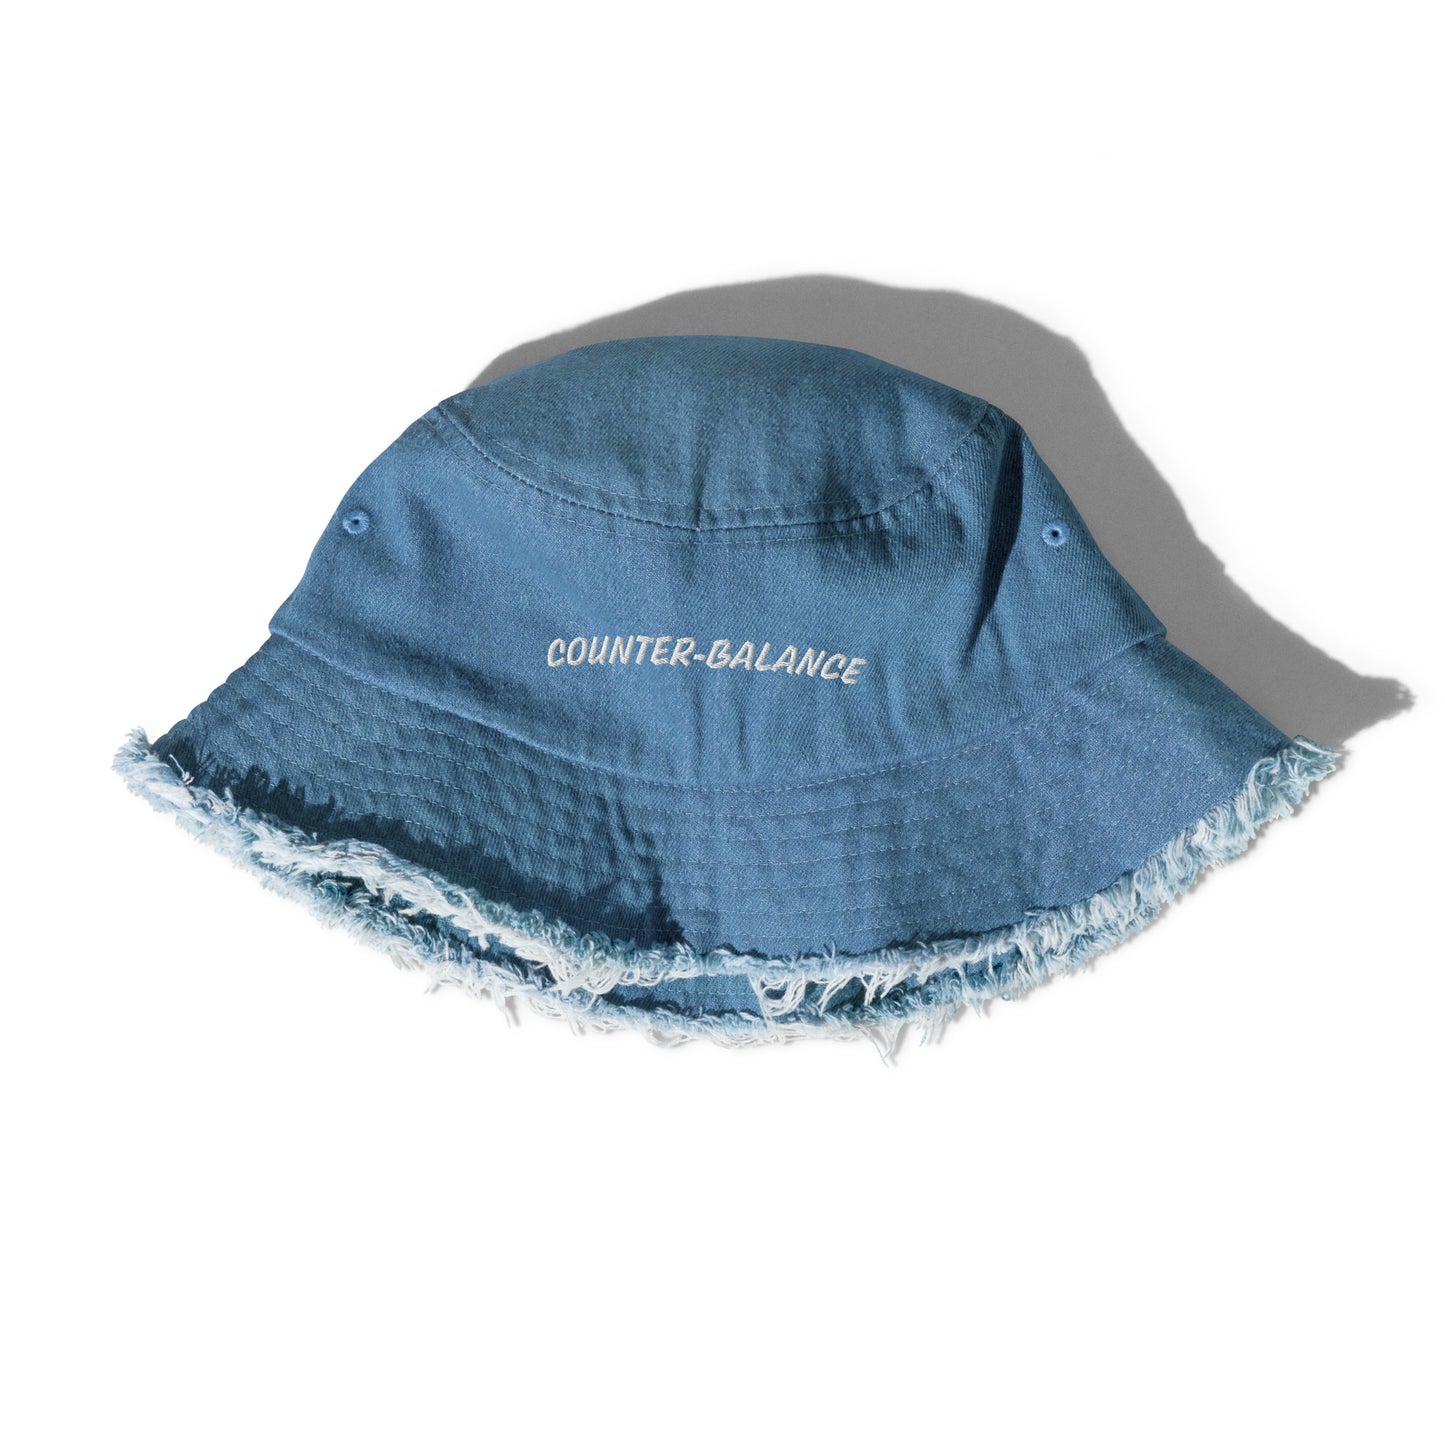 Y005 - หมวกบักเก็ตยีนส์เดนิม (สีน้ำเงิน)